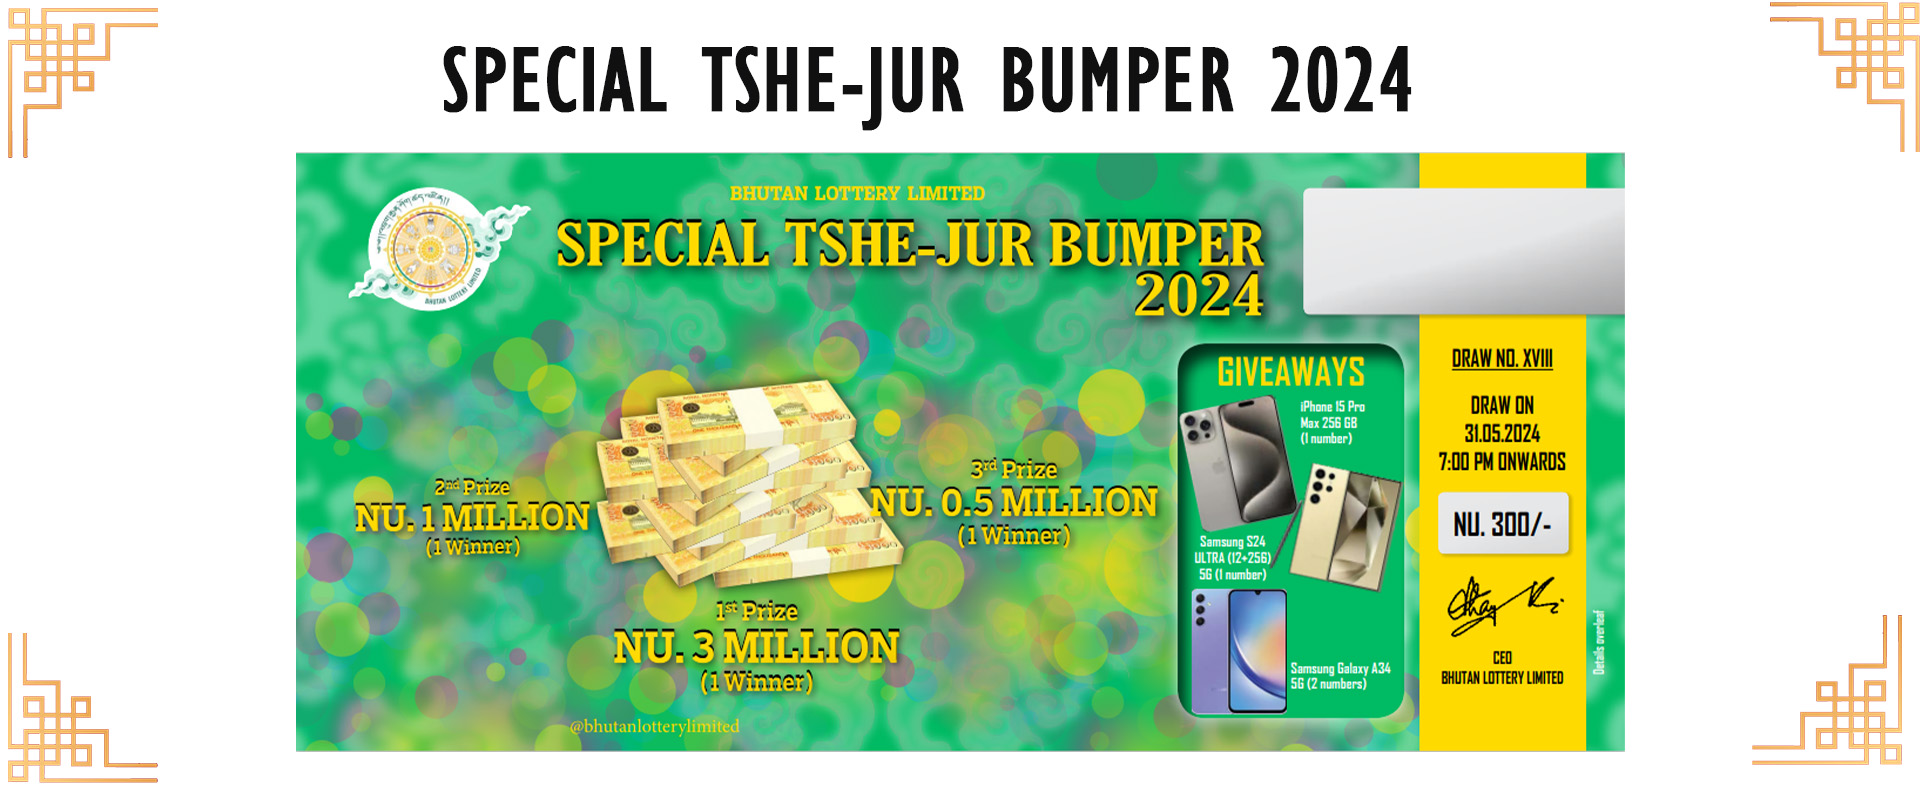 Tshe -jur Bumper 2024